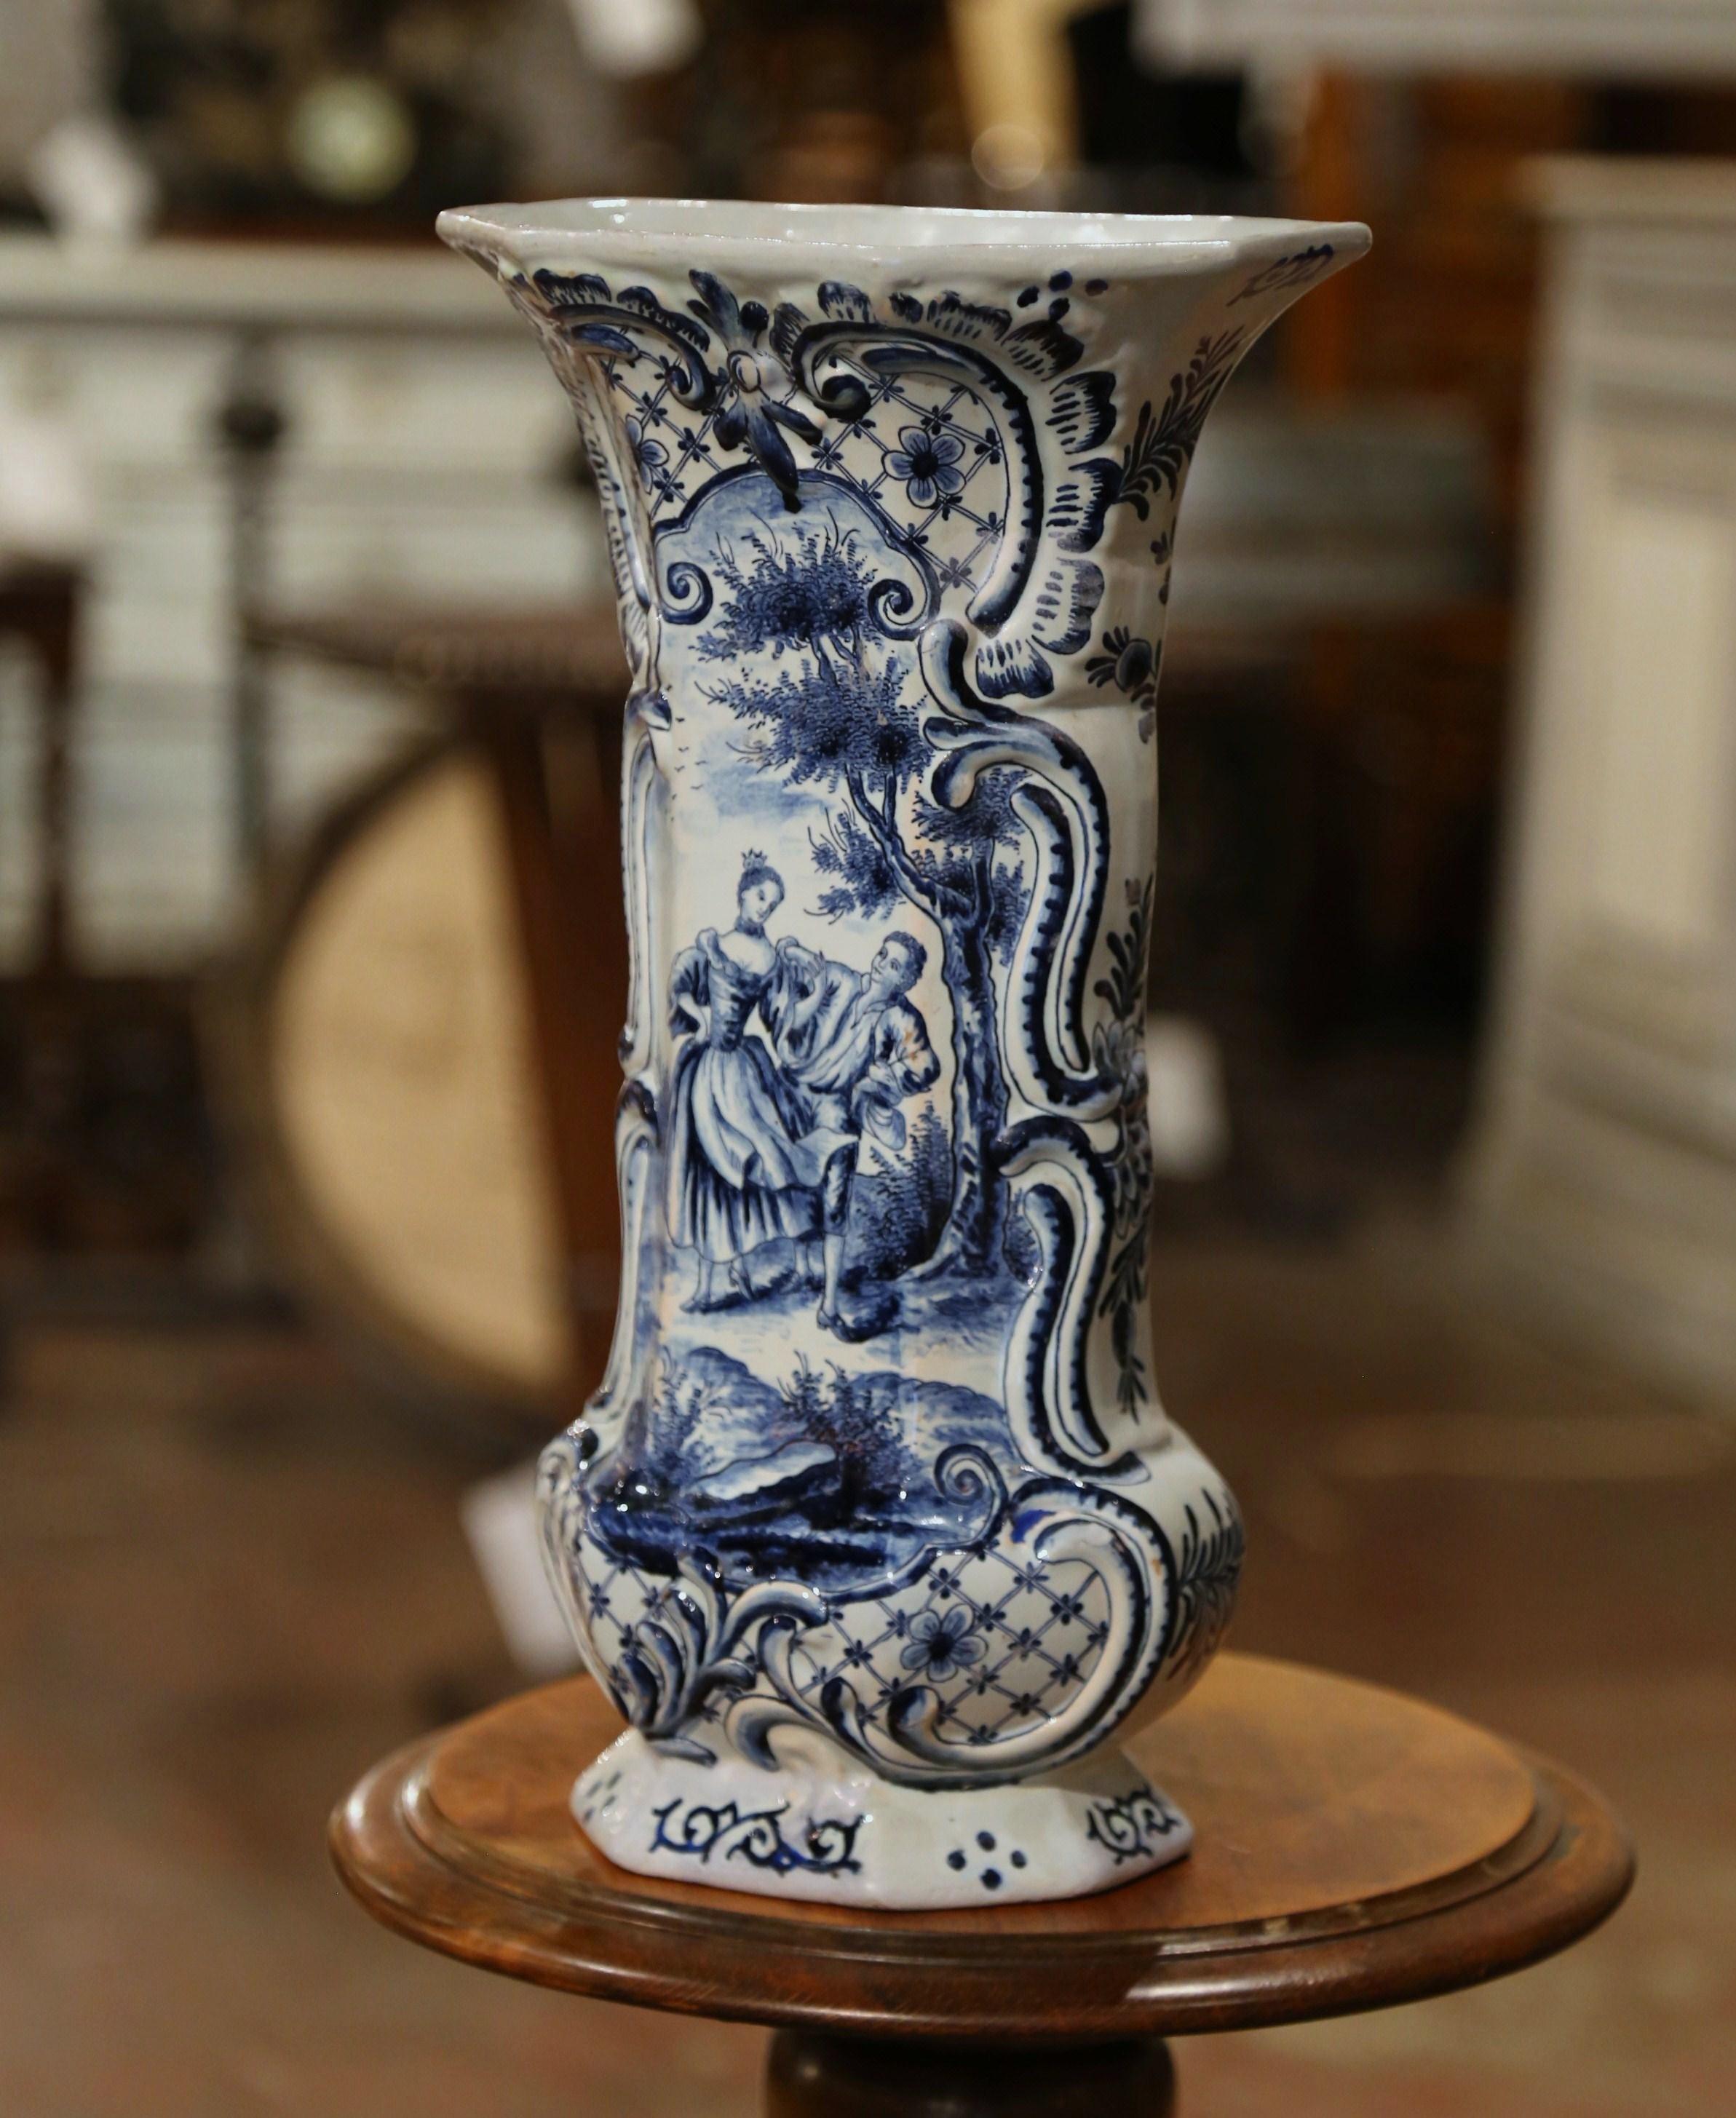 Diese bedeutende antike Vase wurde um 1780 in Frankreich hergestellt. Das achteckige Gefäß mit gadroniertem Korpus und hohem Hals ist mit einem handgemalten Medaillon versehen, das eine Freiluft-Hofszene in der traditionellen blau-weißen